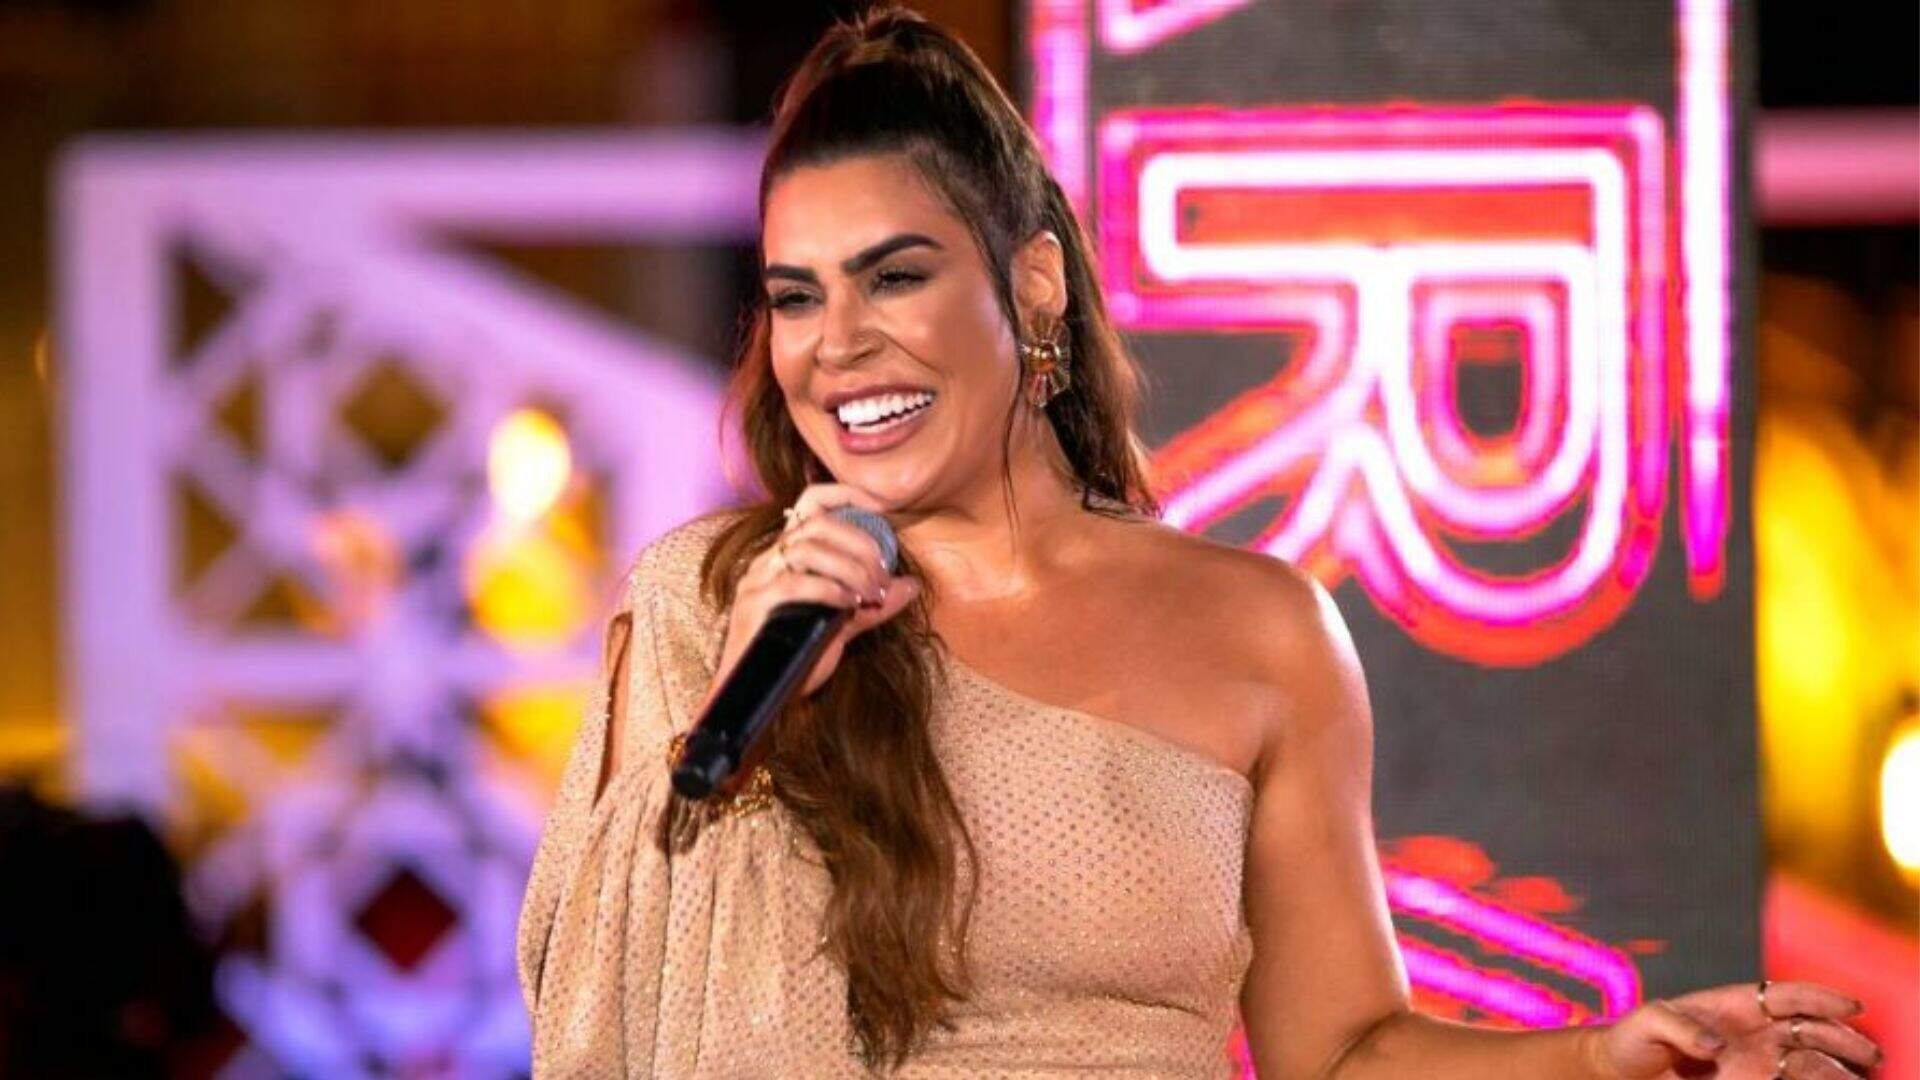 Irritou! Após atitude perigosa de fã, Naiara Azevedo pausa show e dá bronca surpreendente - Metropolitana FM